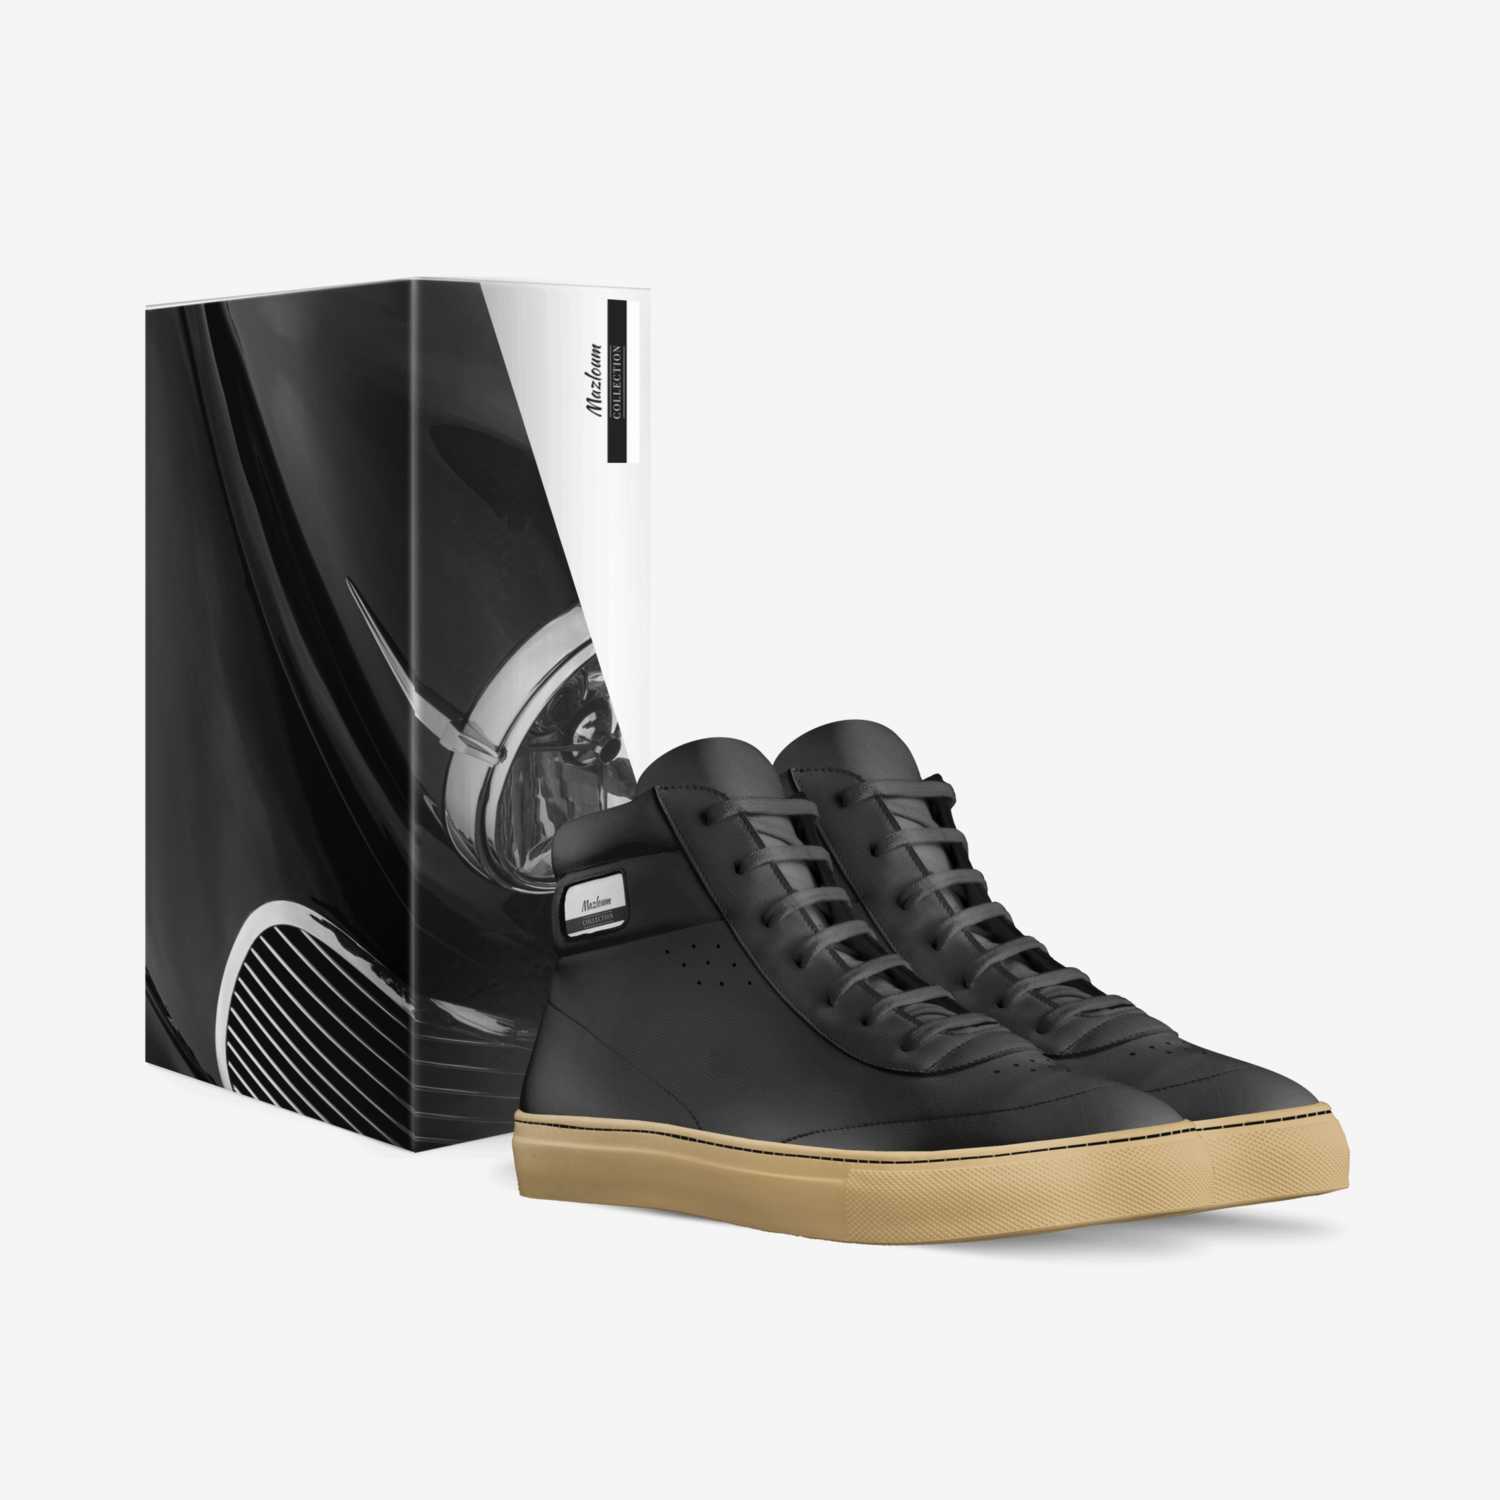 Mazloum custom made in Italy shoes by Adam Mazloum | Box view